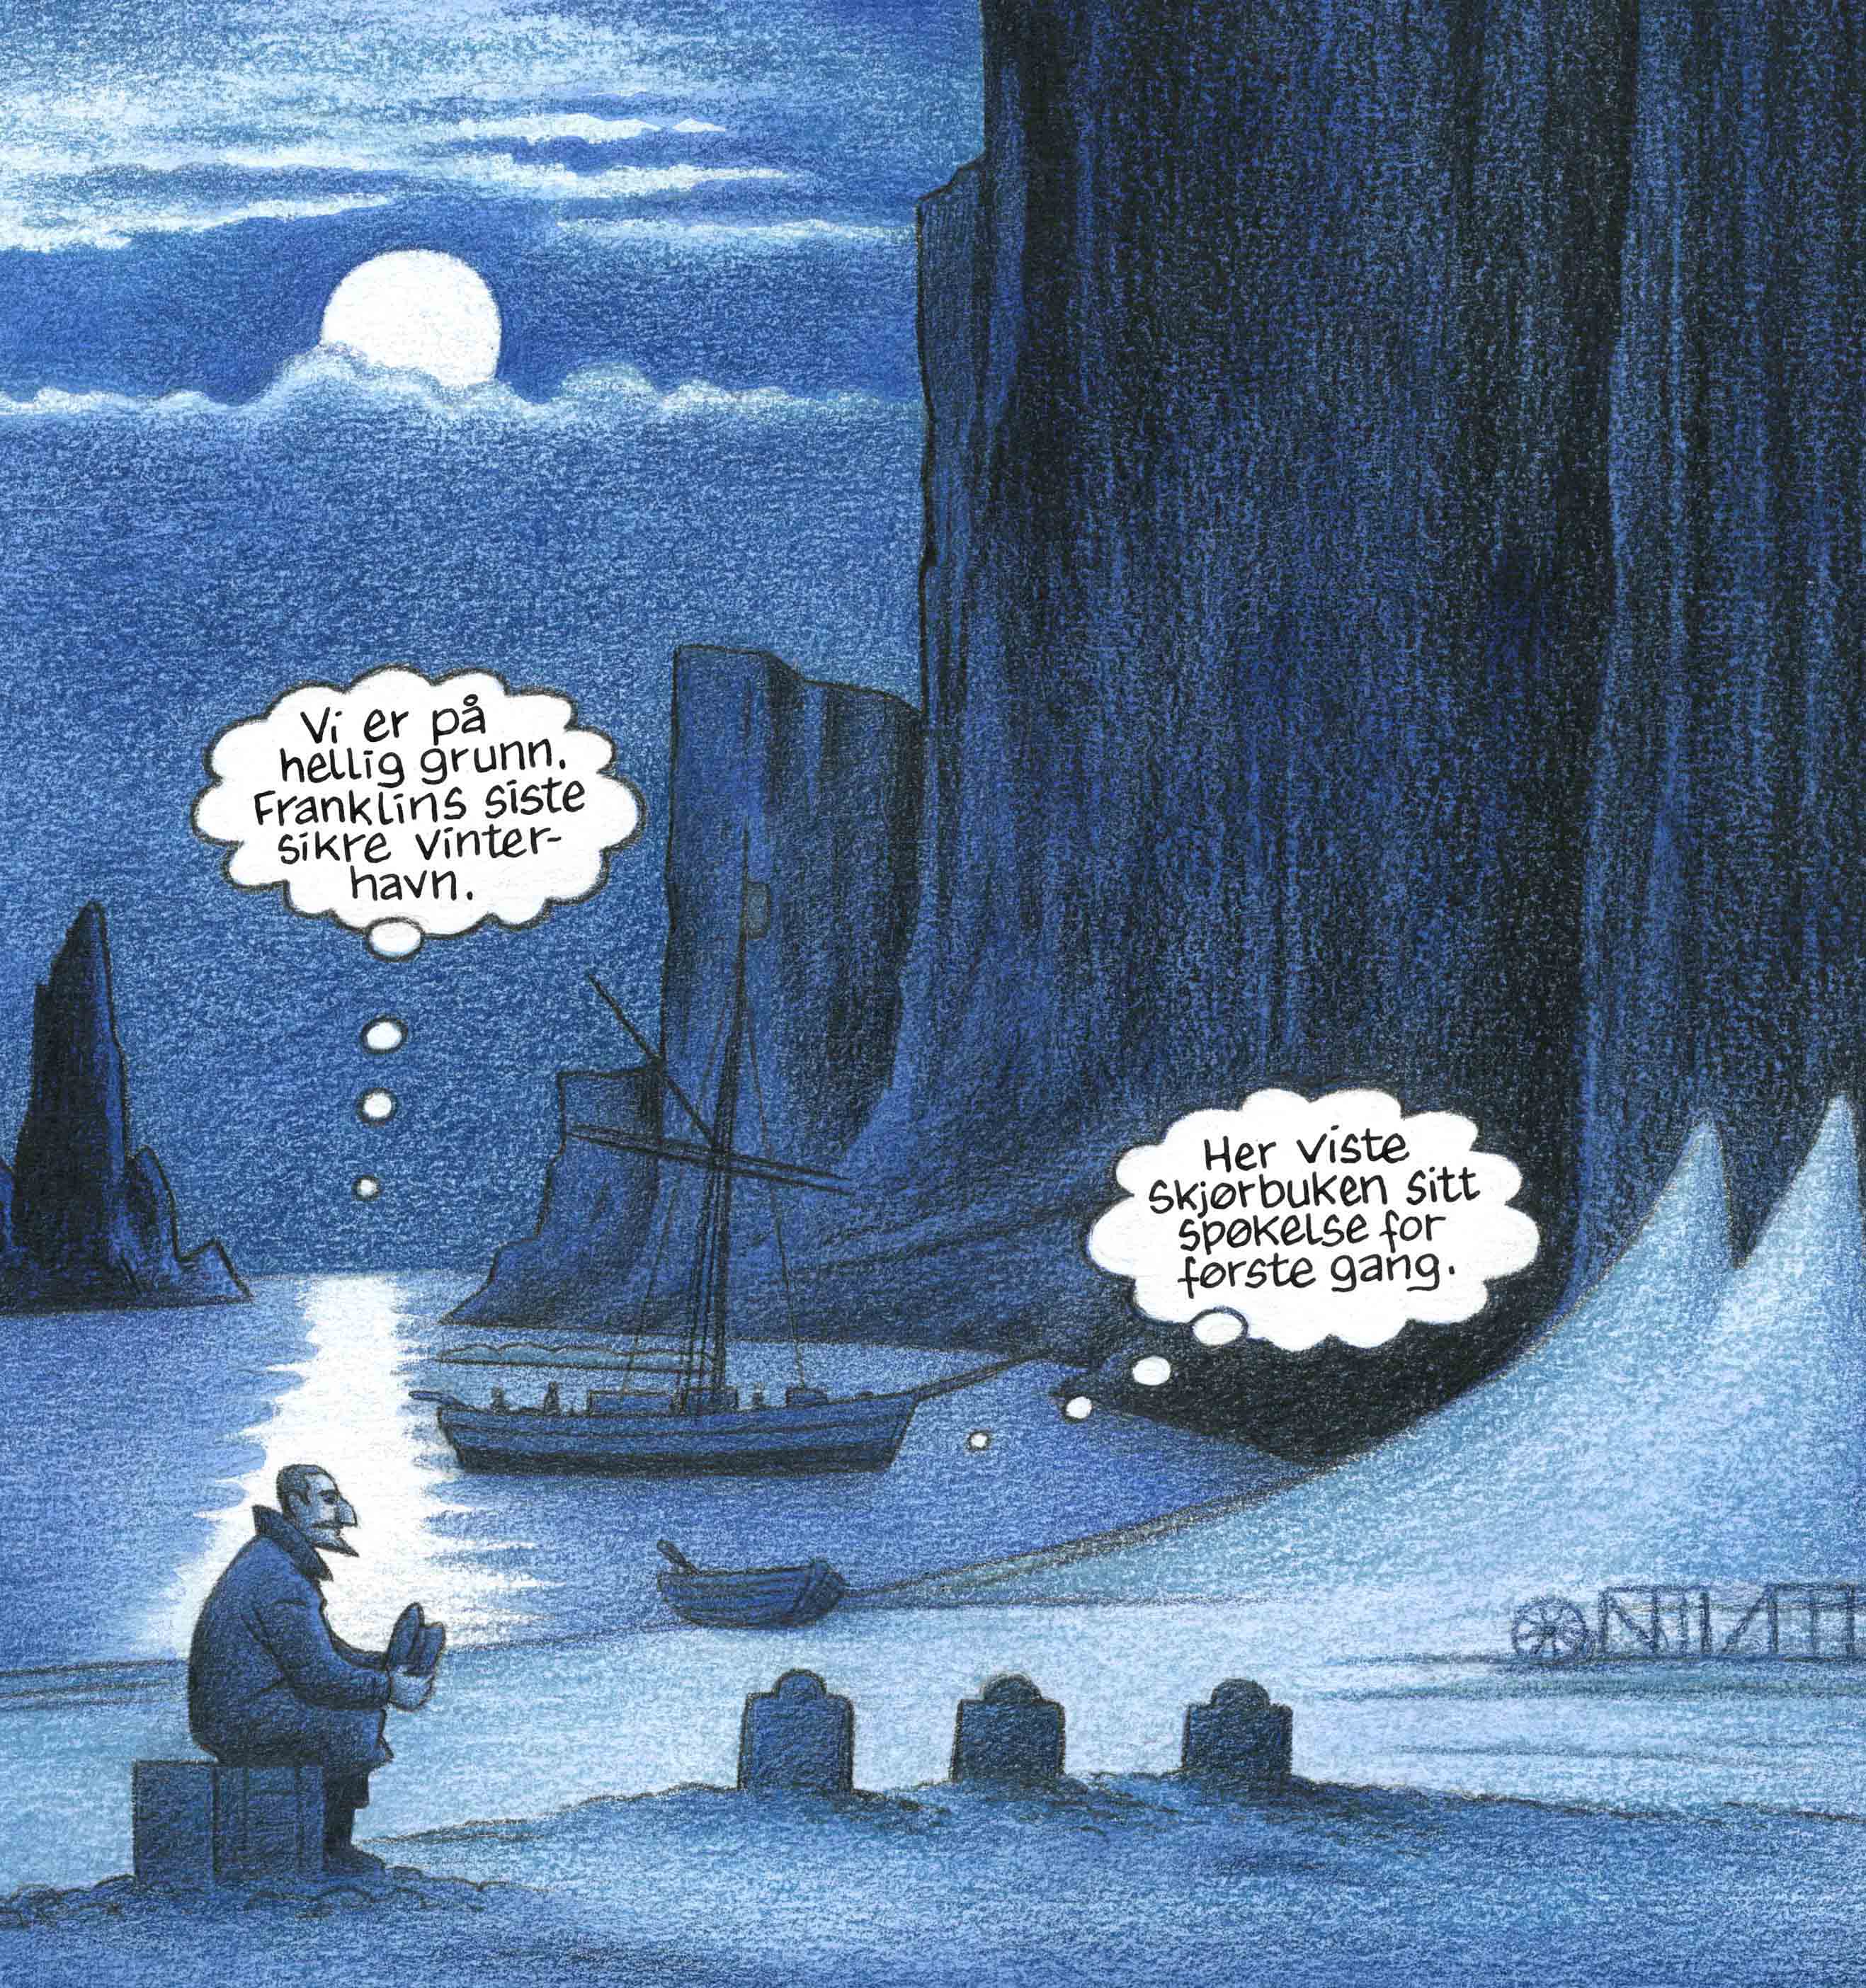 Fra "Amundsen gjennom Nordvestpassasjen" av Bjørn Ousland